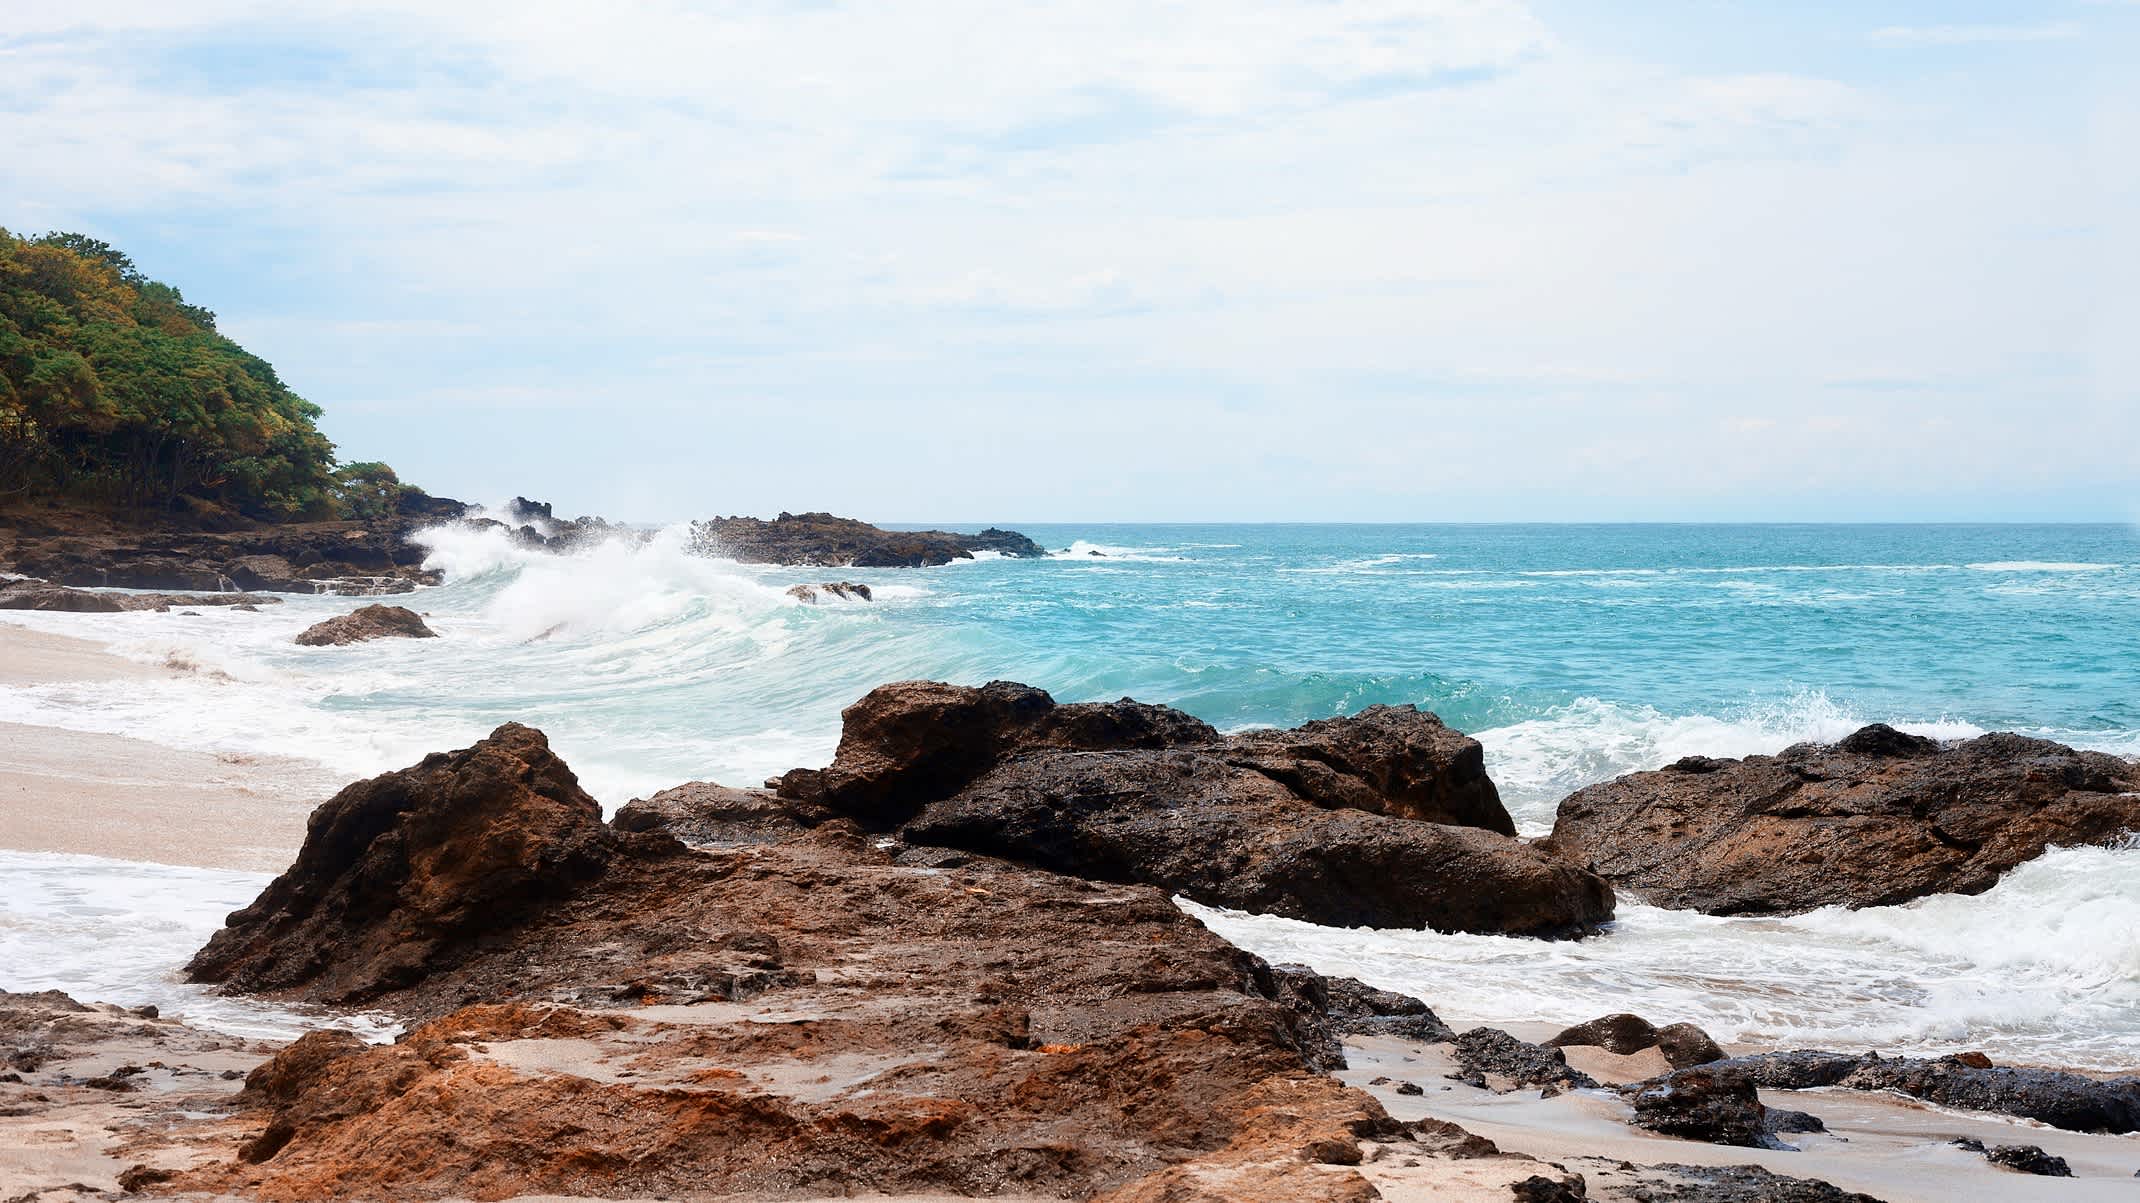 Der Strand von Montezuma in Costa Rica mit imposanten Wellen im blauen Meer und Felsen am weißen Sandstrand. 